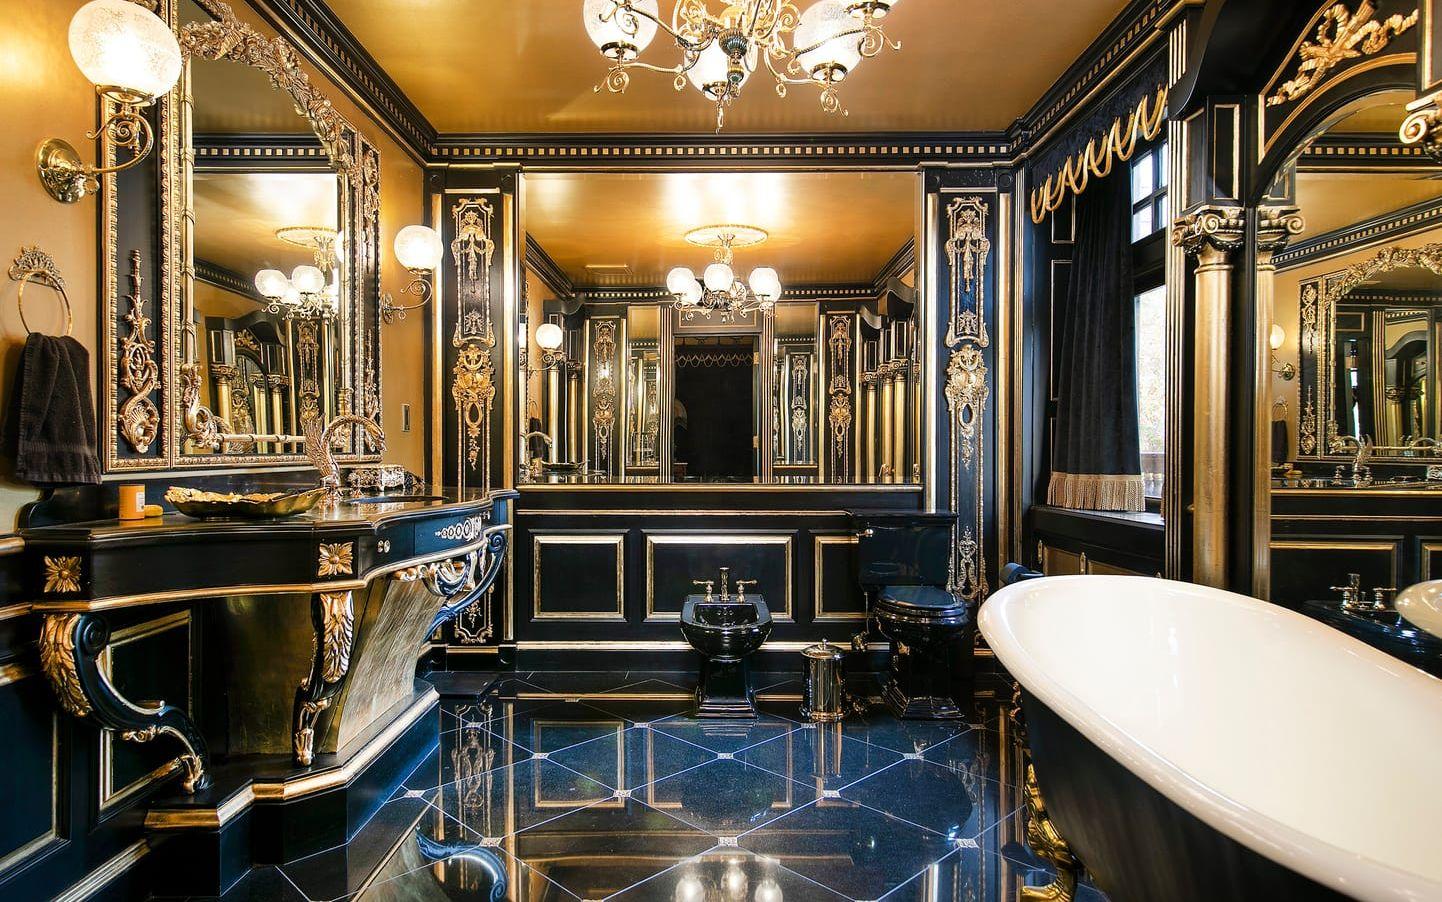 I det här badrummet har man satsat på svart porslin och mycket gulddetaljer. Tvättställskranen ser ut som en drake. Udda.